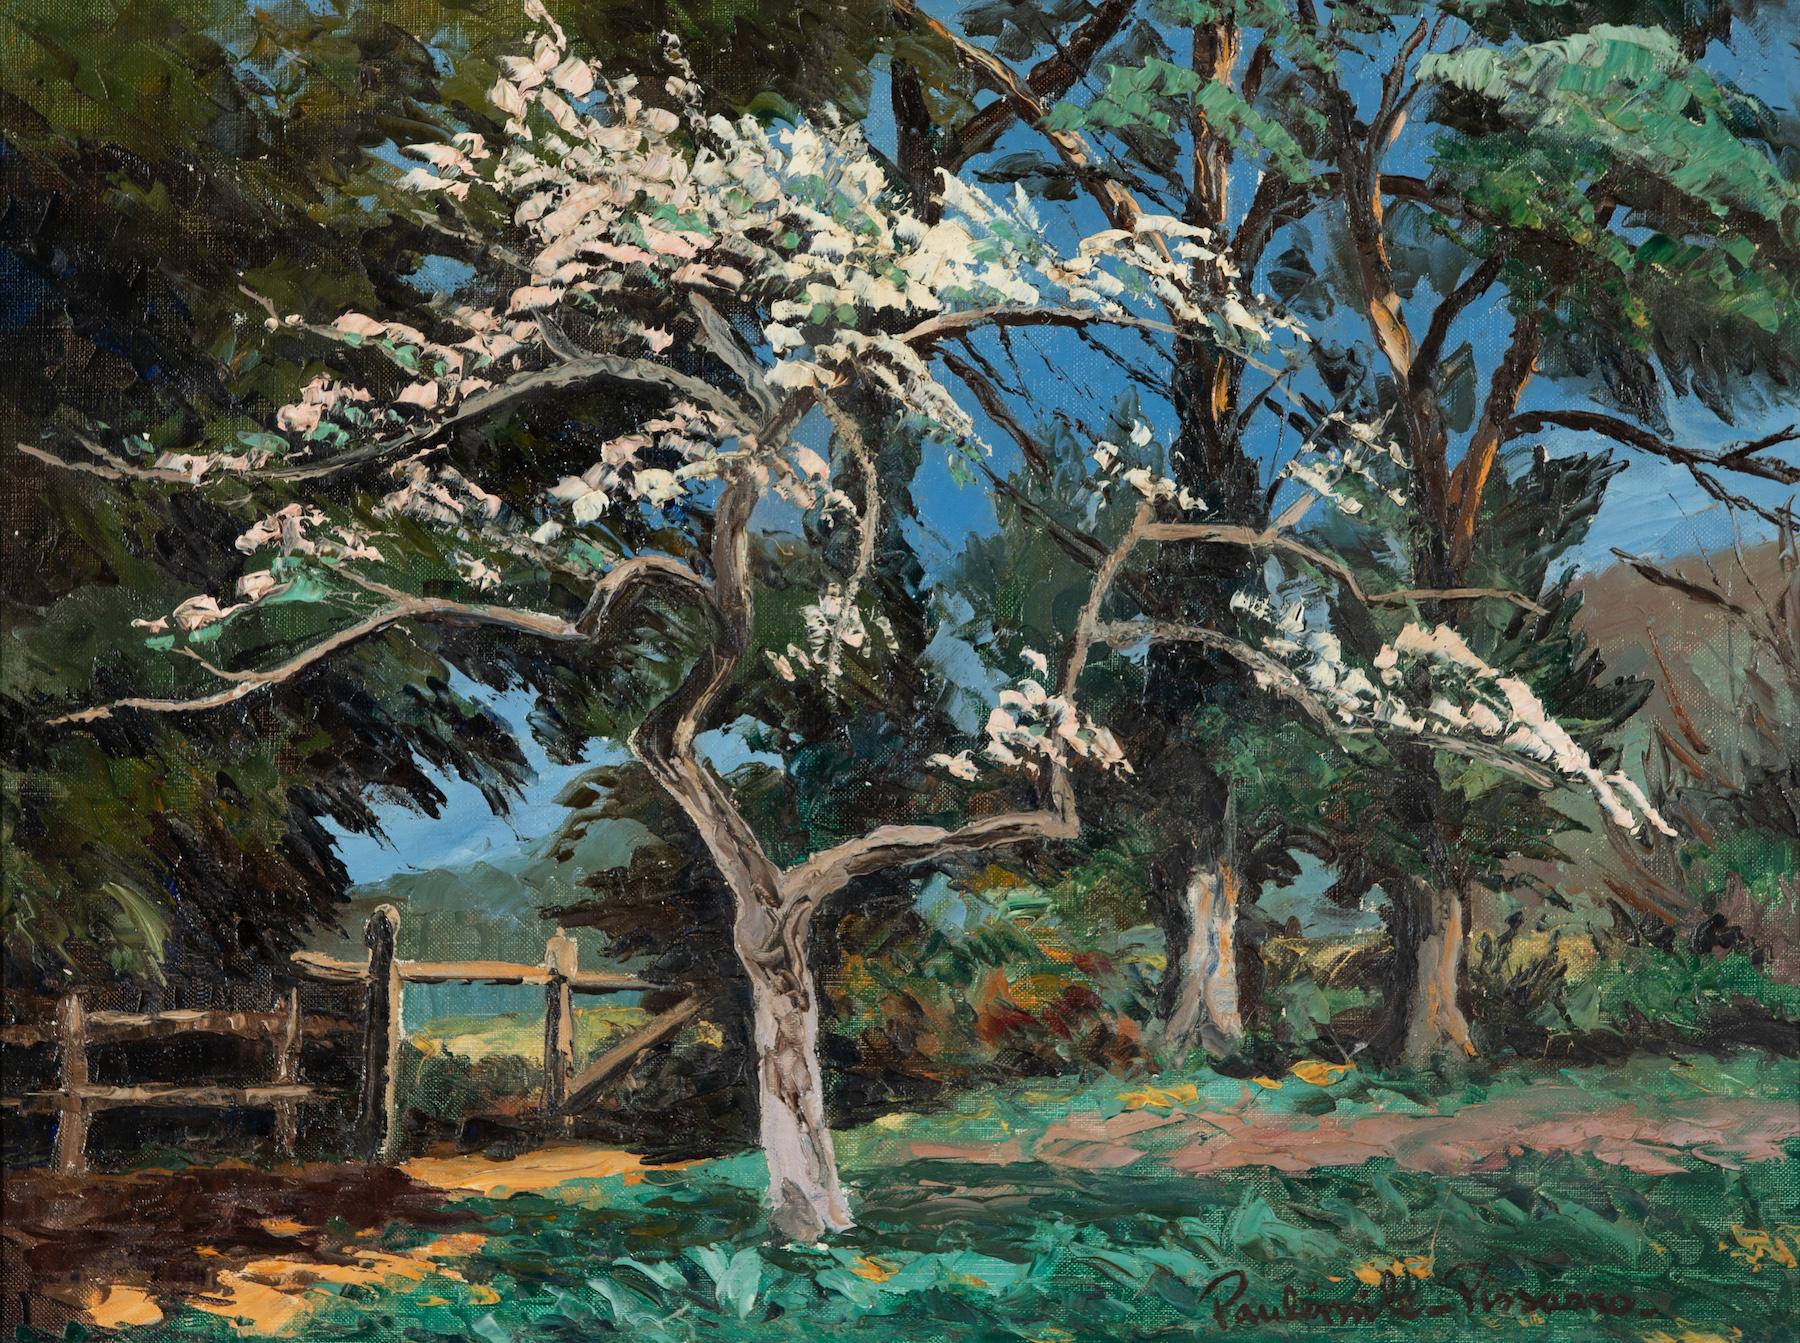 Paul Emile Pissarro Landscape Painting - Poirier en fleurs by Paulémile Pissarro - Landscape painting